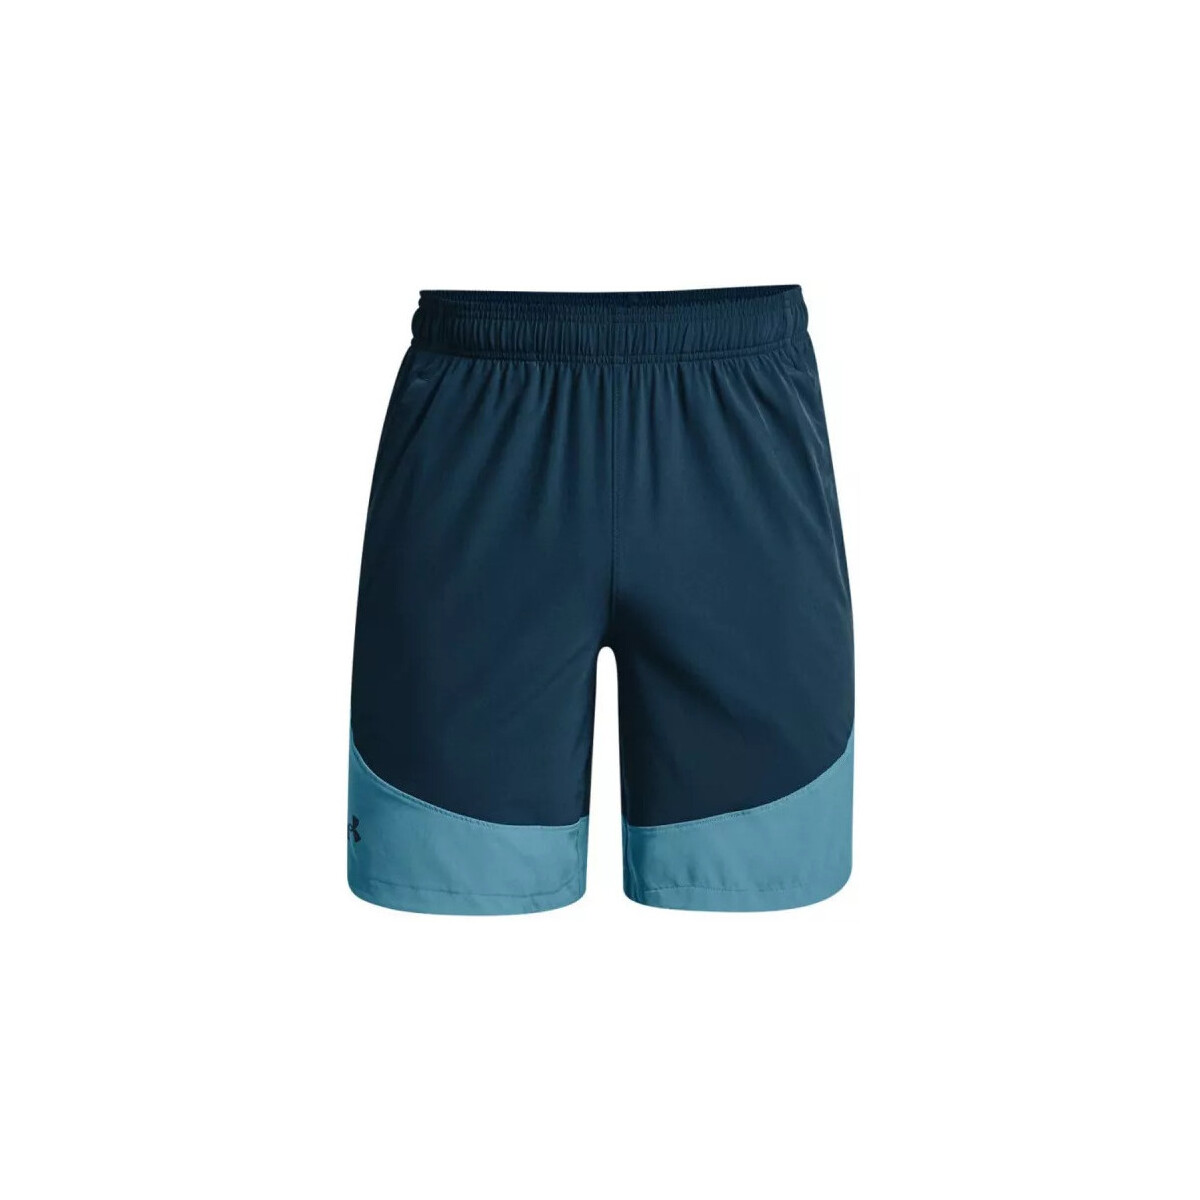 Vêtements Homme Shorts / Bermudas Under Armour Short  HIT WOVEN COLORBLOCK STS Bleu